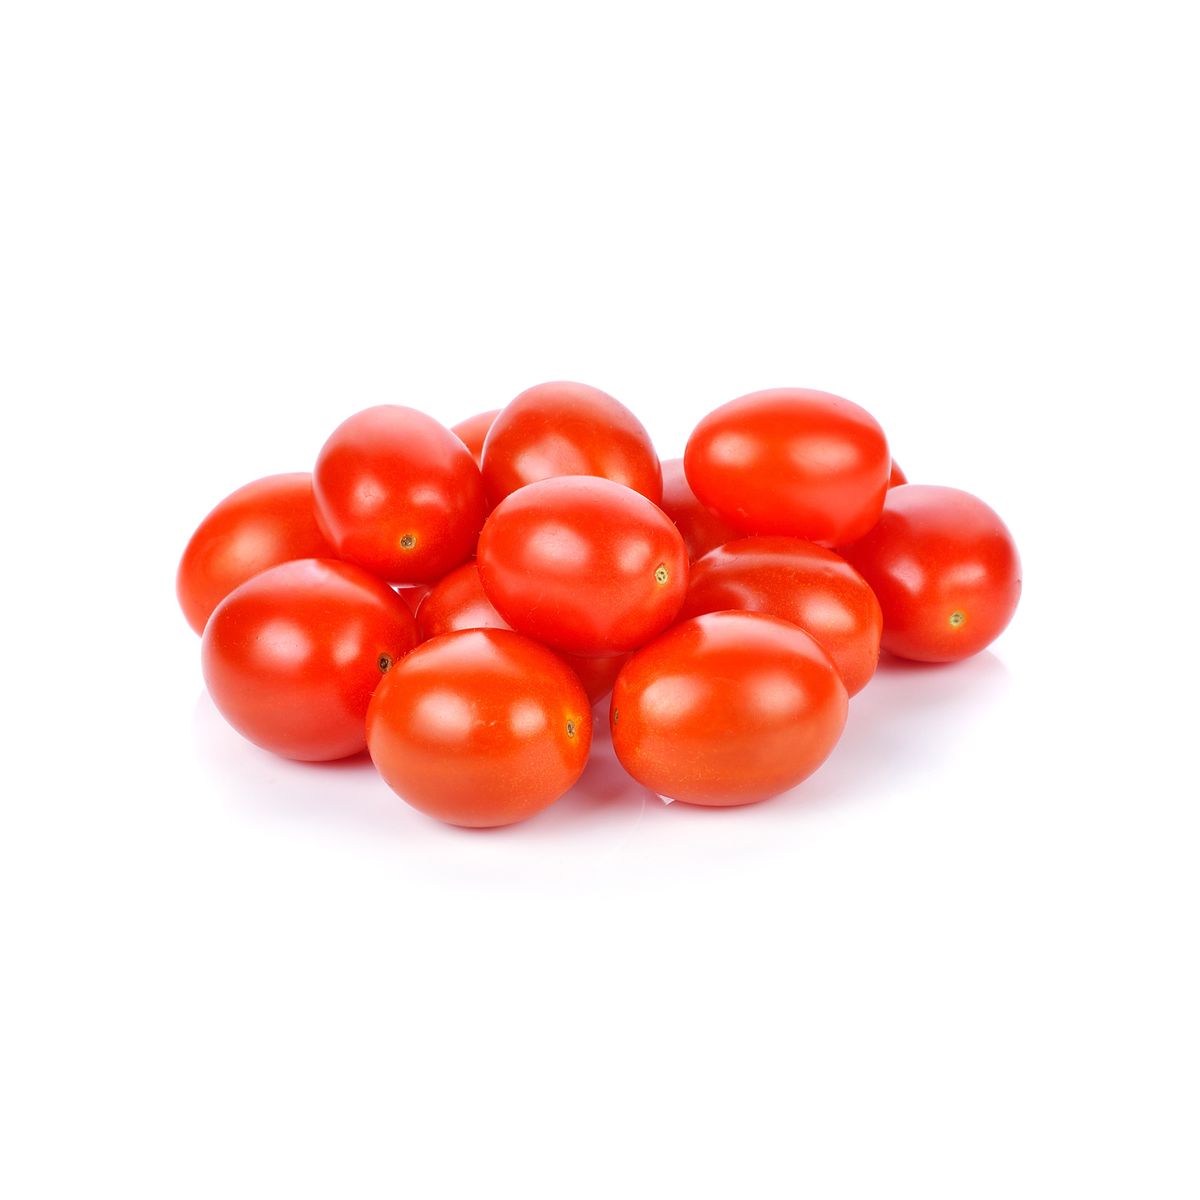 Livraison A Domicile Tomate Cerise Ronde Barquette De 250g